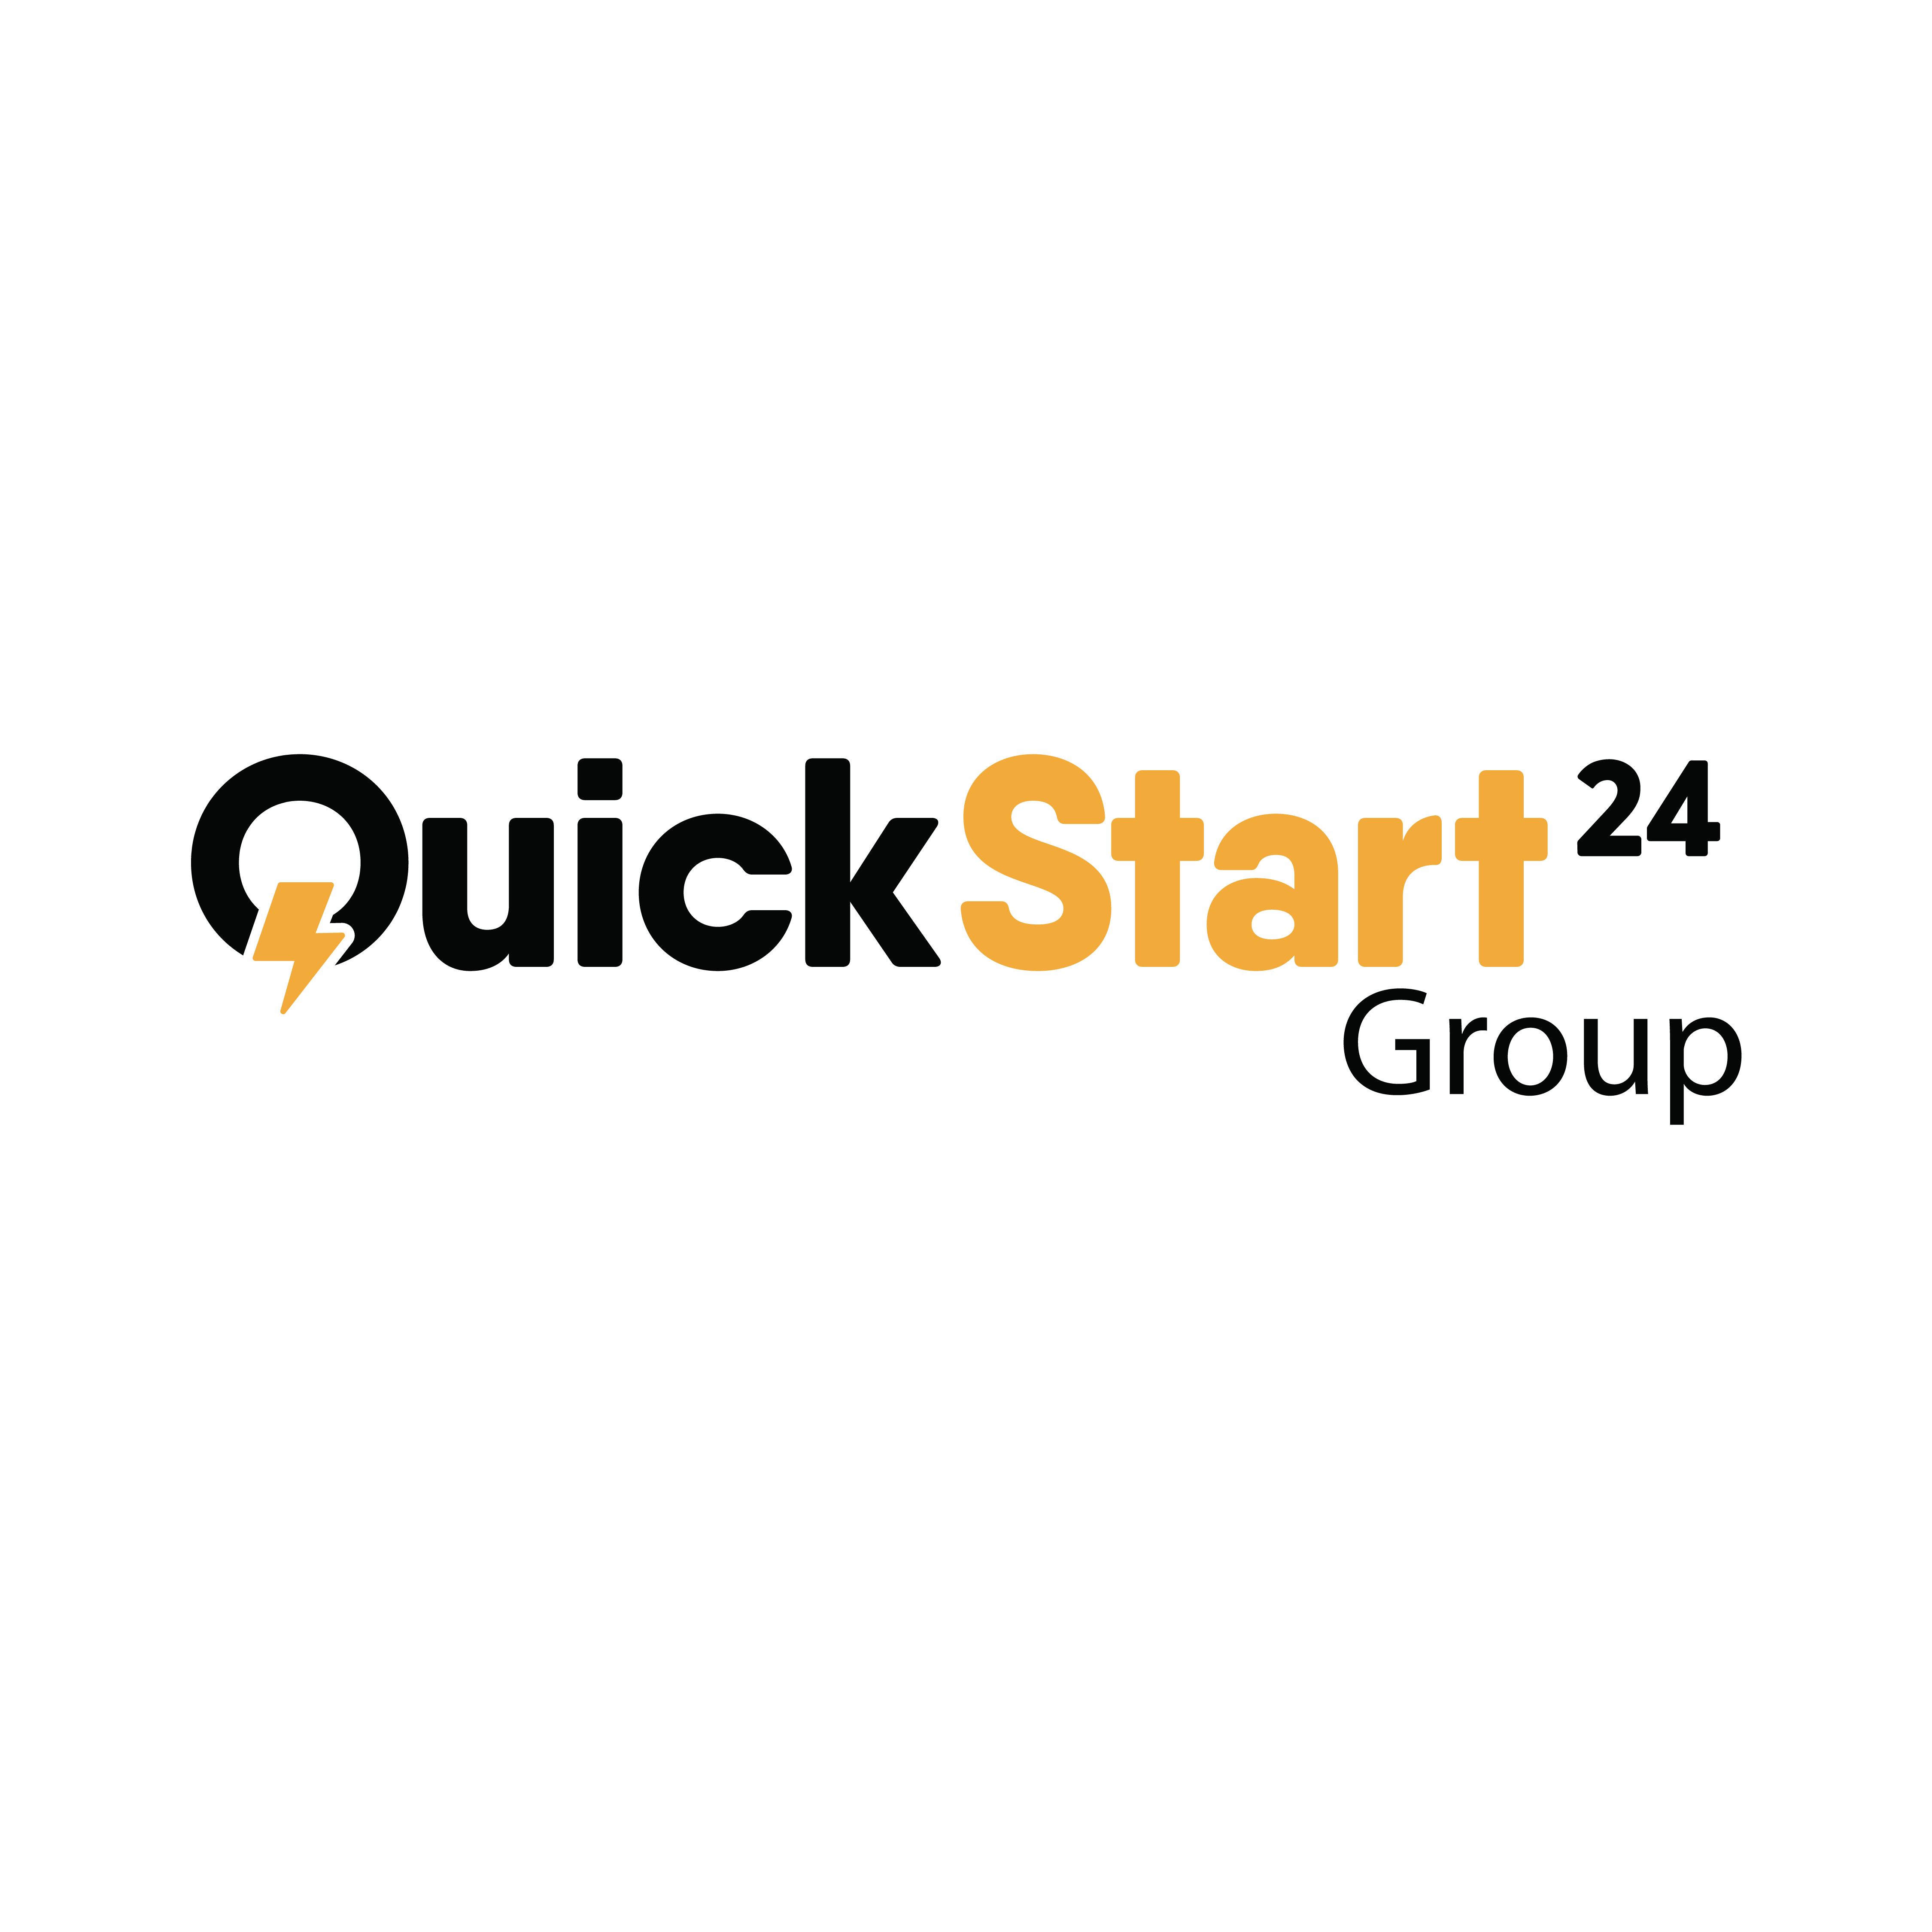 QuickStart24 Group Logo